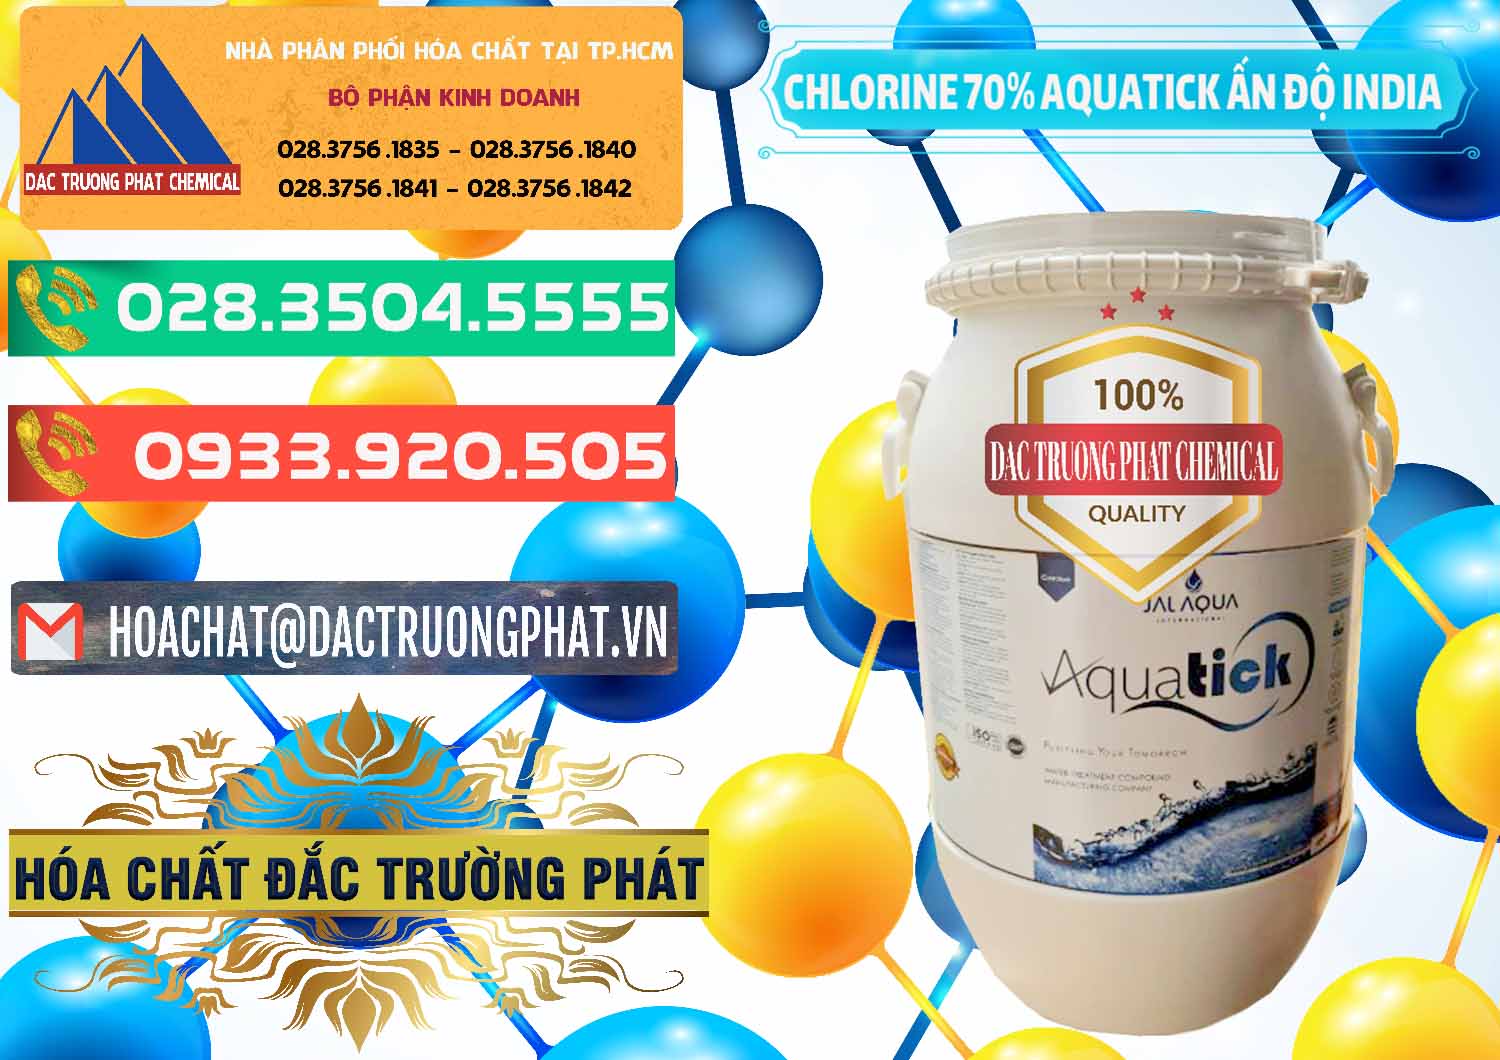 Công ty bán ( cung cấp ) Chlorine – Clorin 70% Aquatick Jal Aqua Ấn Độ India - 0215 - Chuyên nhập khẩu ( cung cấp ) hóa chất tại TP.HCM - congtyhoachat.com.vn